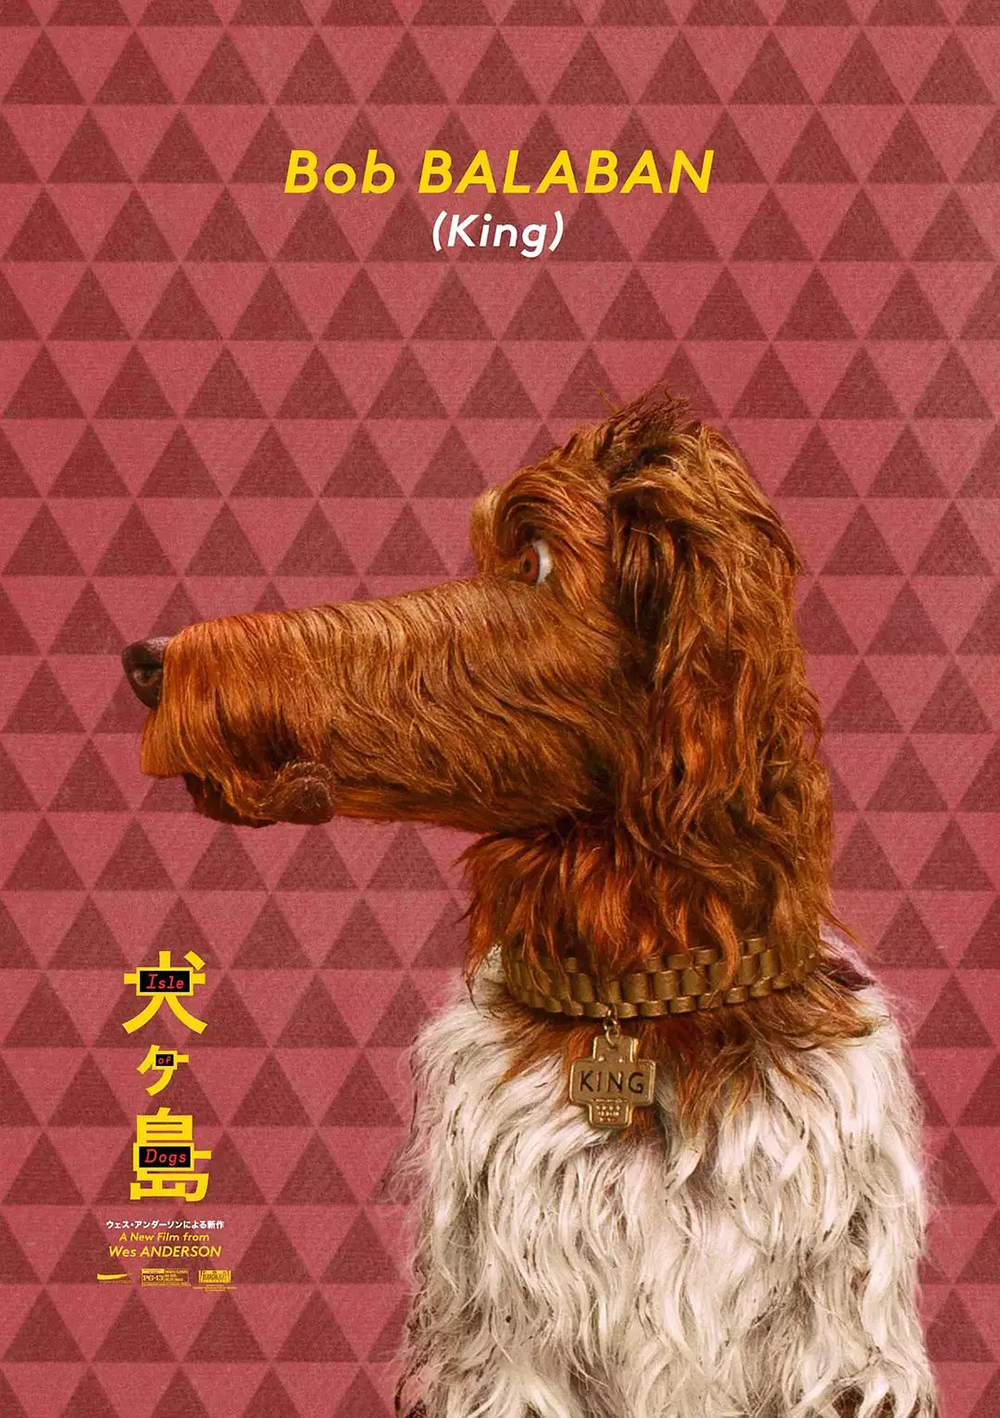 电影《犬之岛》预告版+正式版海报